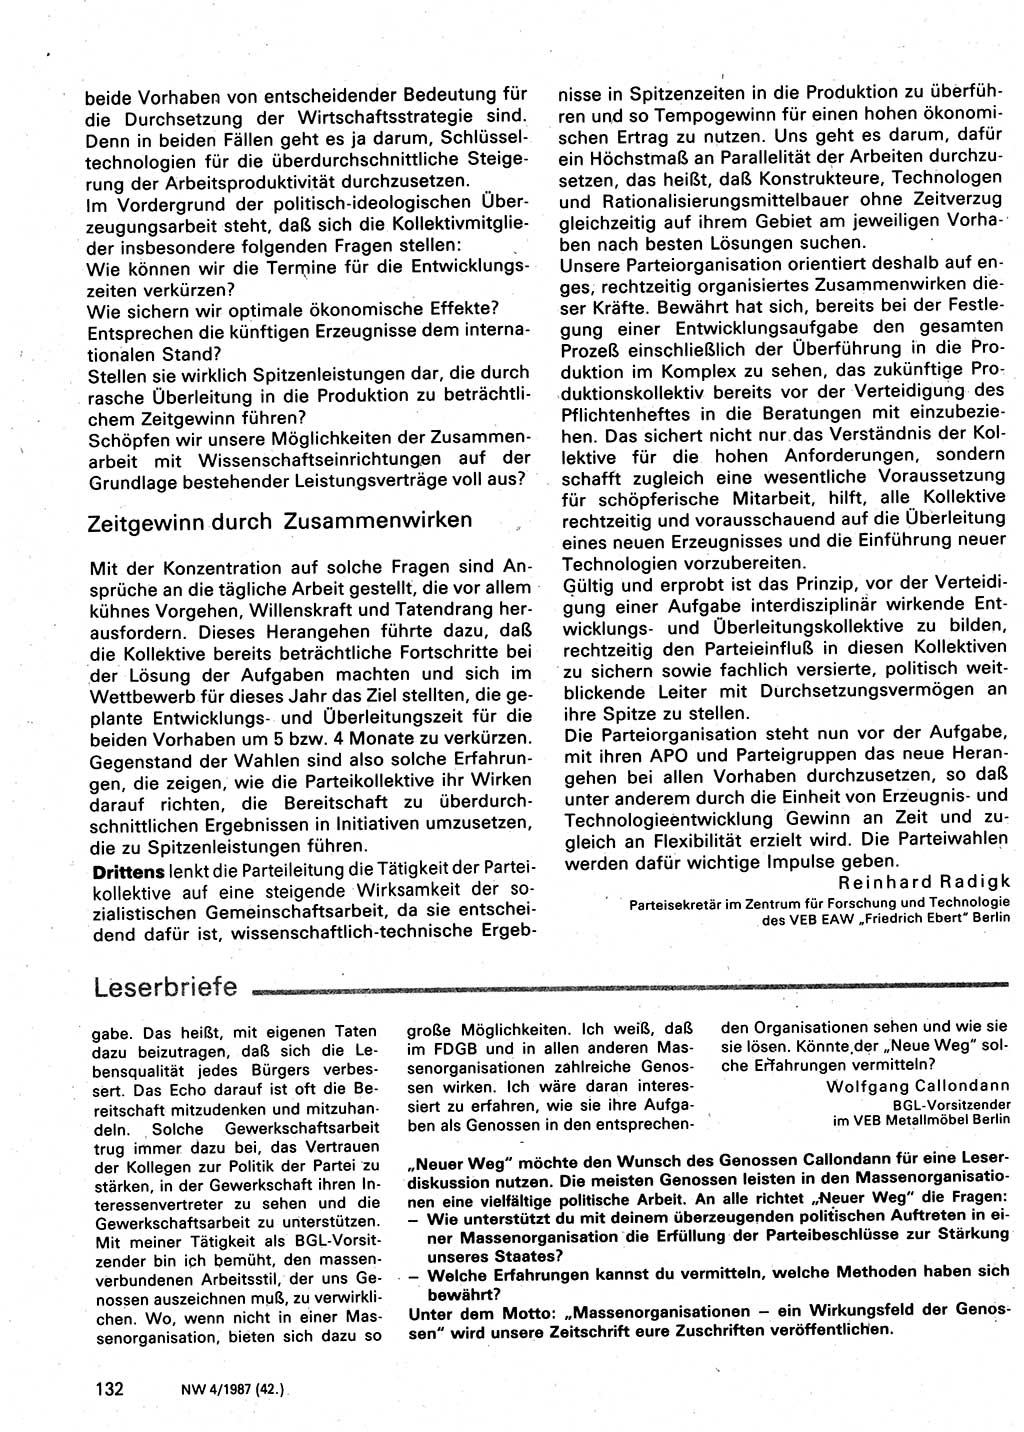 Neuer Weg (NW), Organ des Zentralkomitees (ZK) der SED (Sozialistische Einheitspartei Deutschlands) für Fragen des Parteilebens, 42. Jahrgang [Deutsche Demokratische Republik (DDR)] 1987, Seite 132 (NW ZK SED DDR 1987, S. 132)